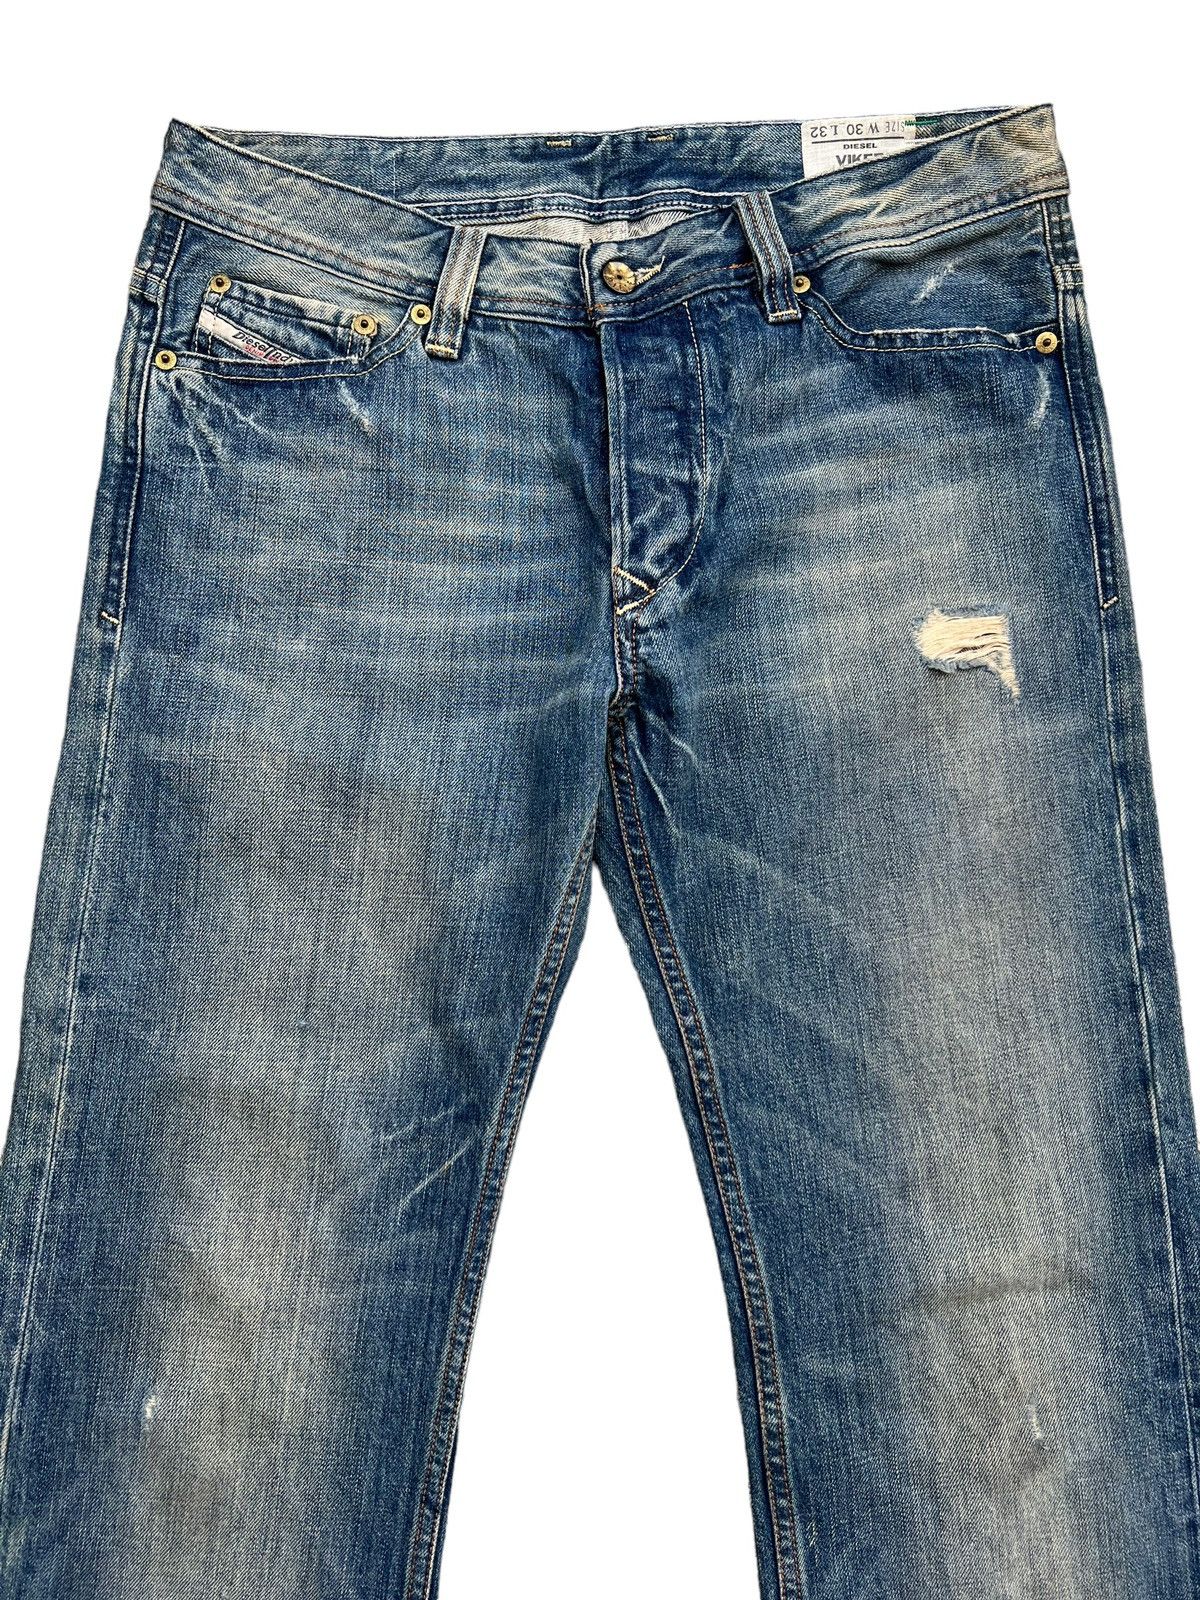 Diesel Mudwash Distressed Straightcut Denim Jeans 33x32 - 4